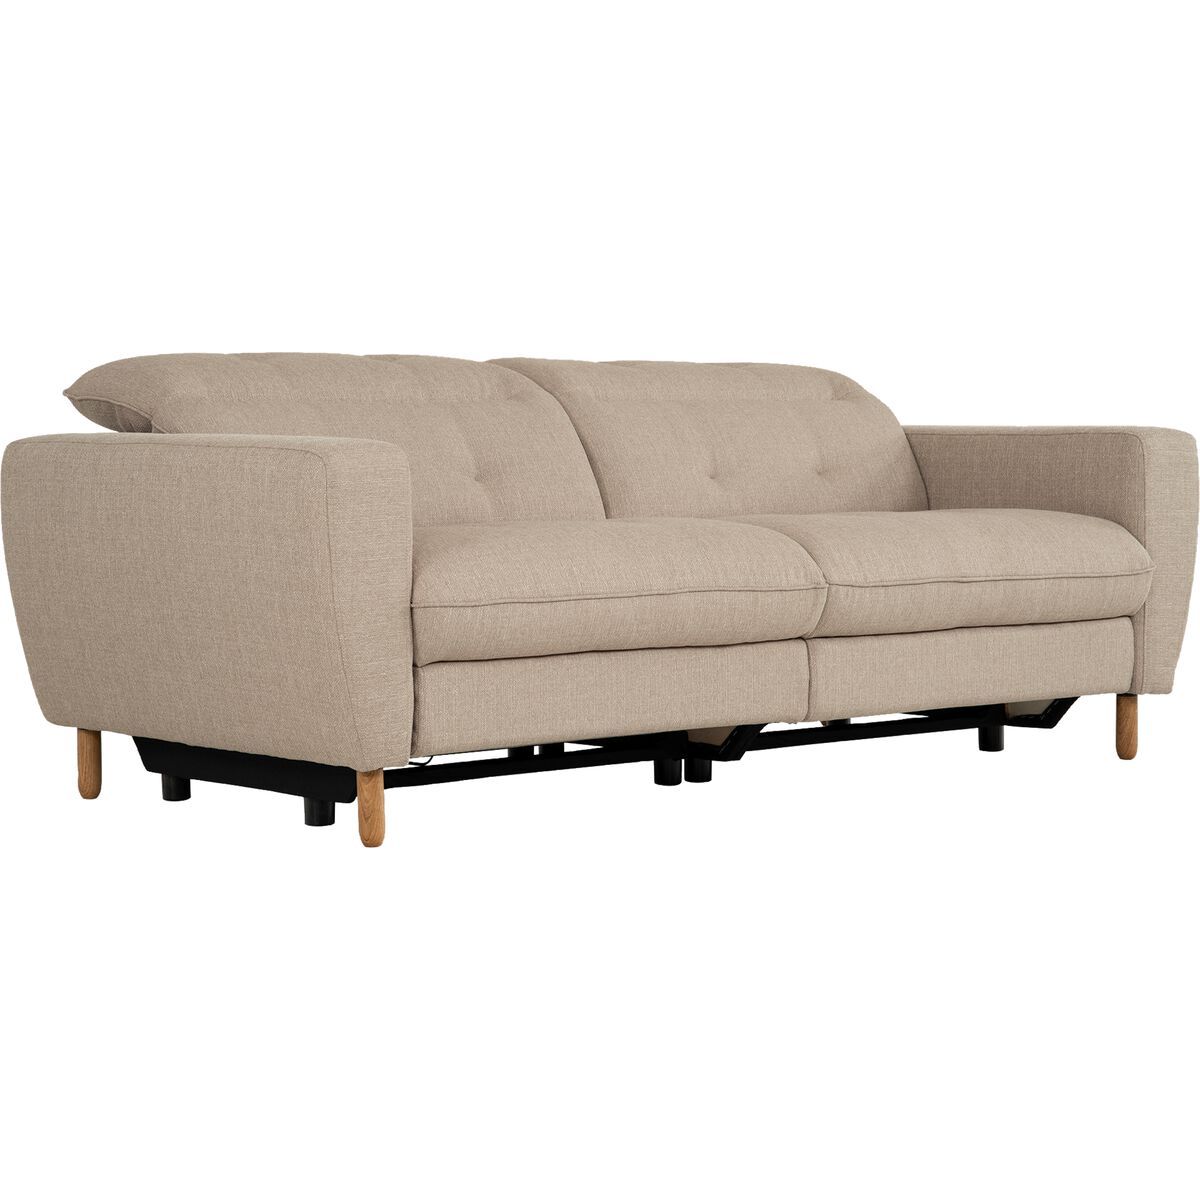 Quelle taille de canapé choisir ? – alinea